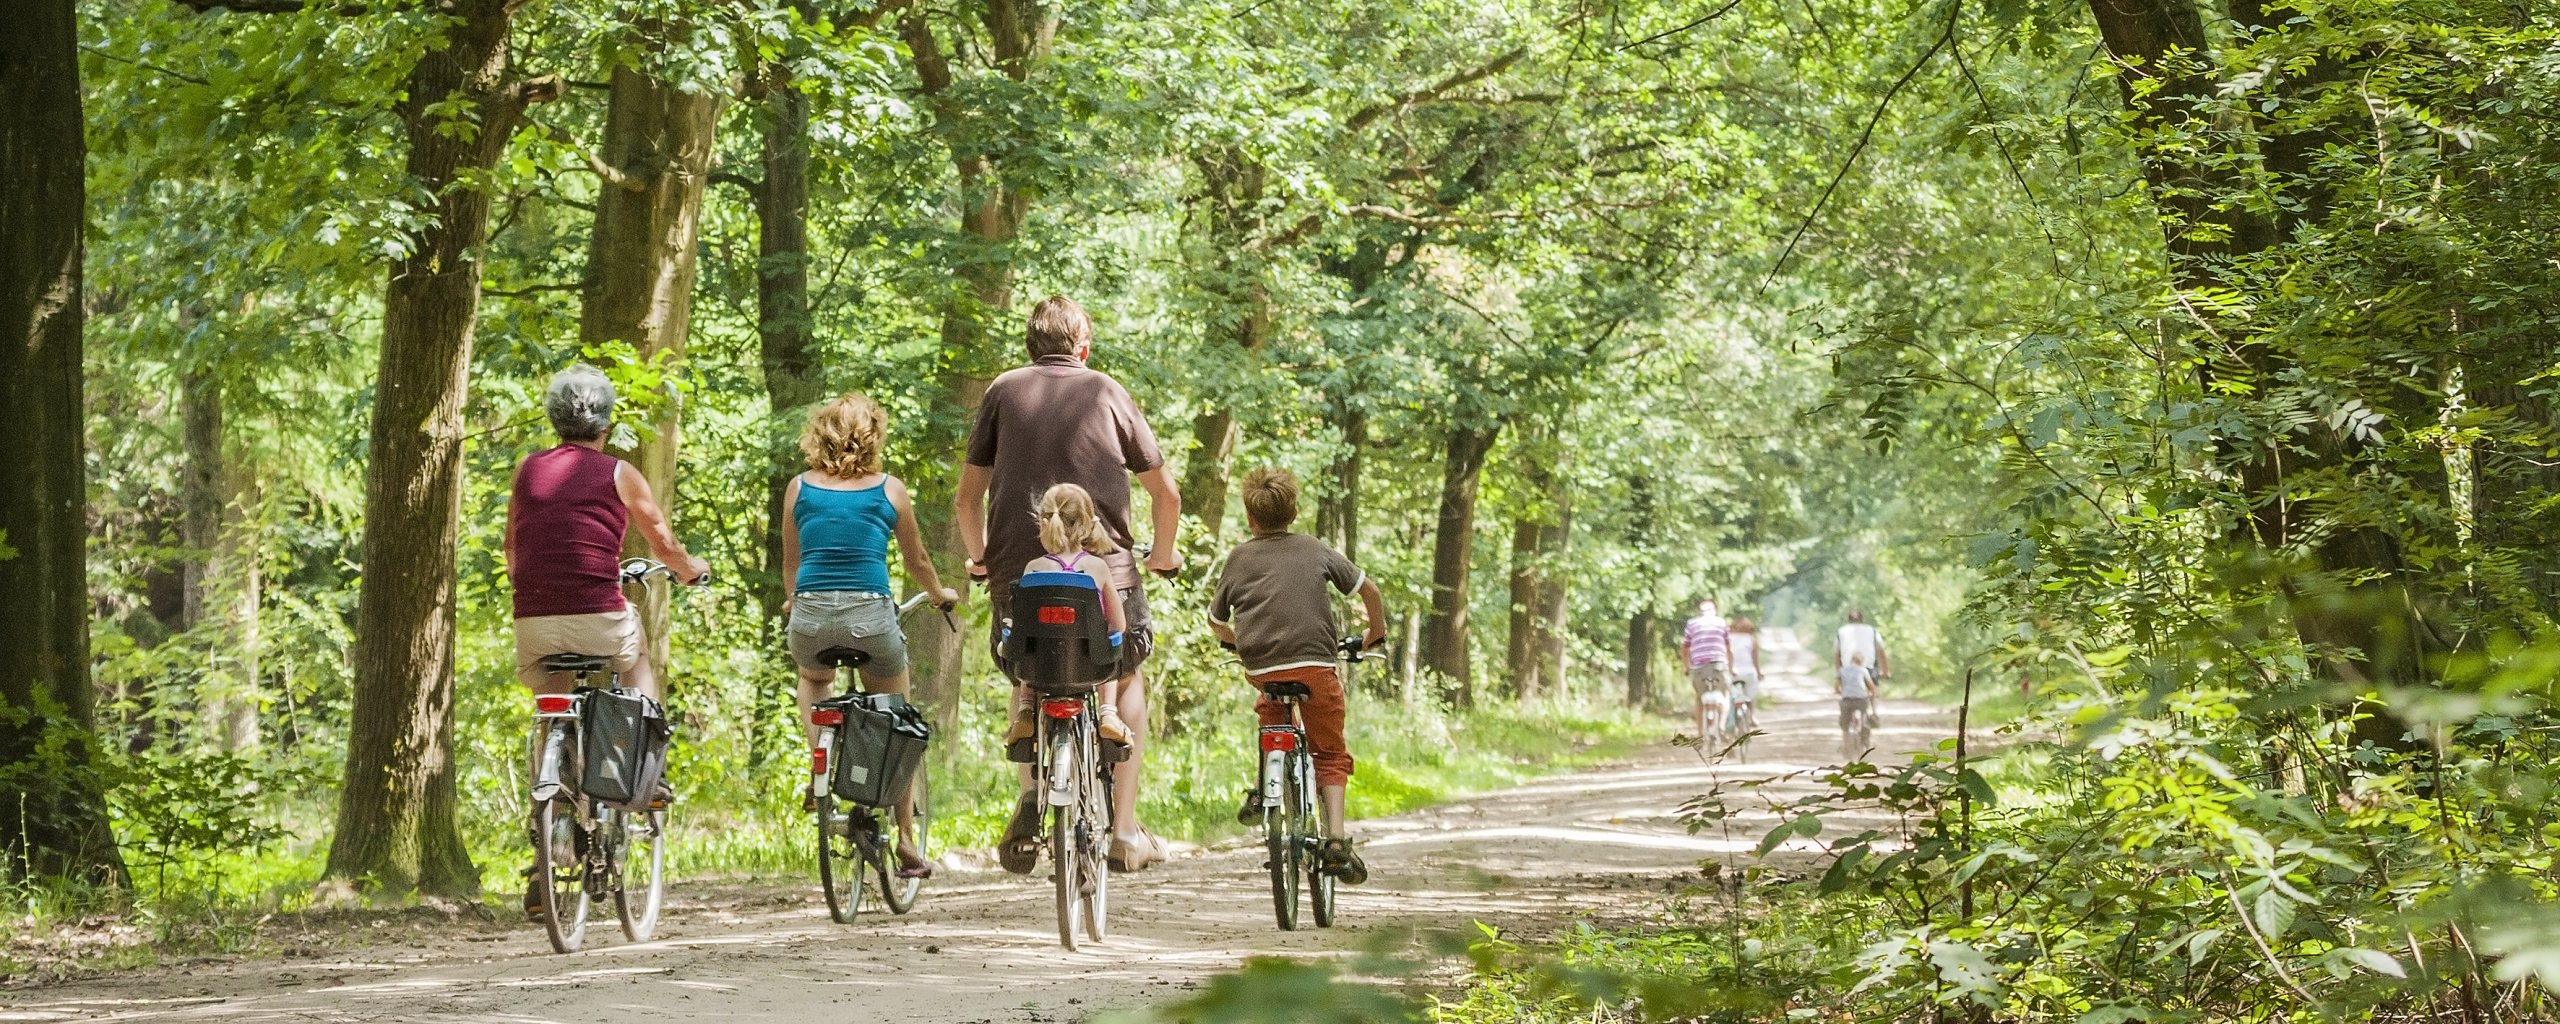 We zien een fietspad middenin een zeer groene, bosrijke omgeving: in Nationaal Park De Meinweg. Op het fietspad zien we de achterkant van 4 mensen op een fiets. Bij één van de fietsers zit een kind achterop in een kinderstoeltje.